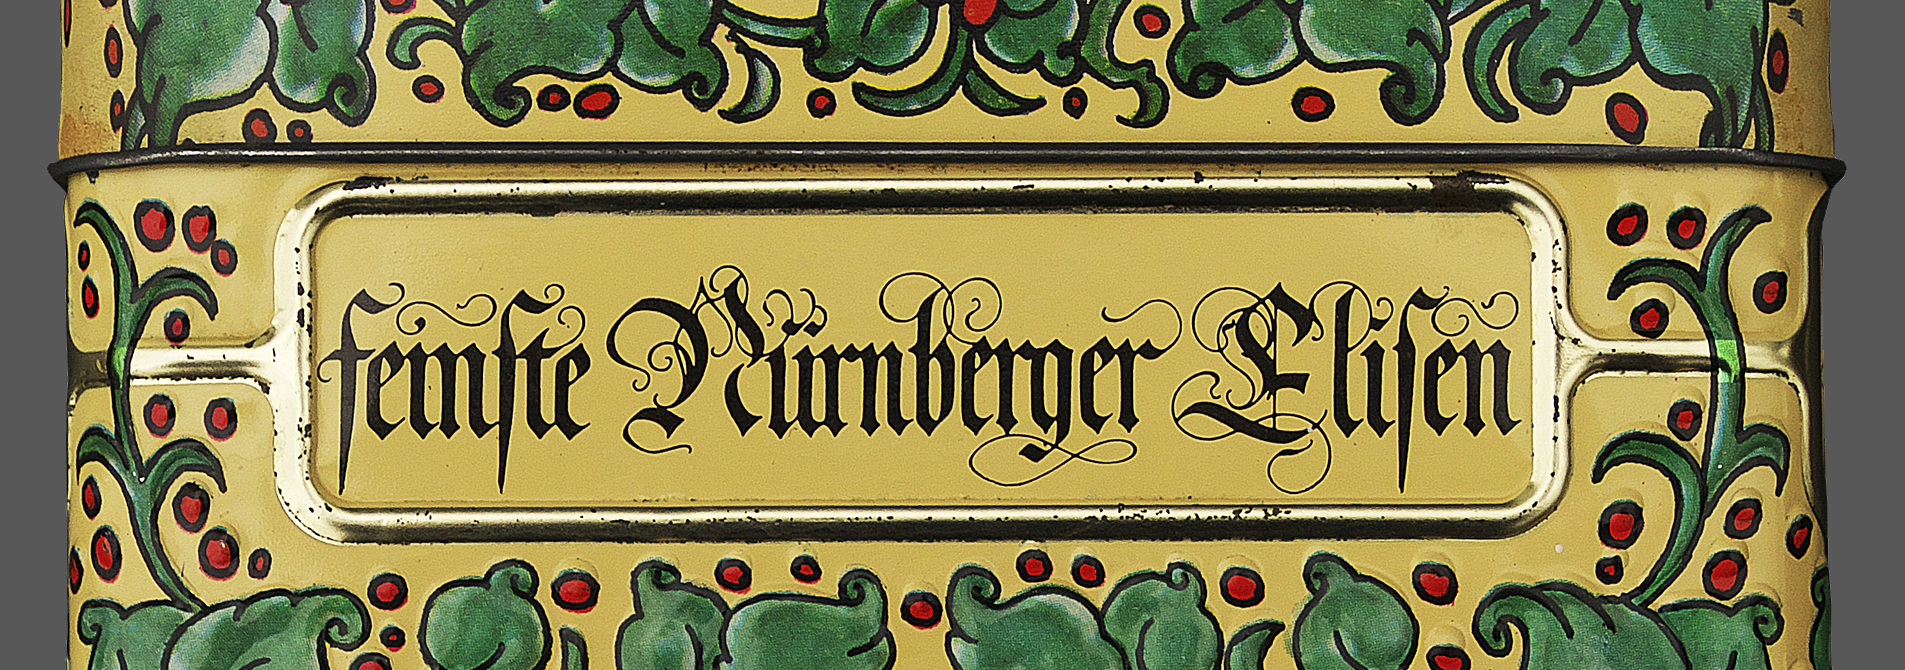 Nuernberger Gingerbread